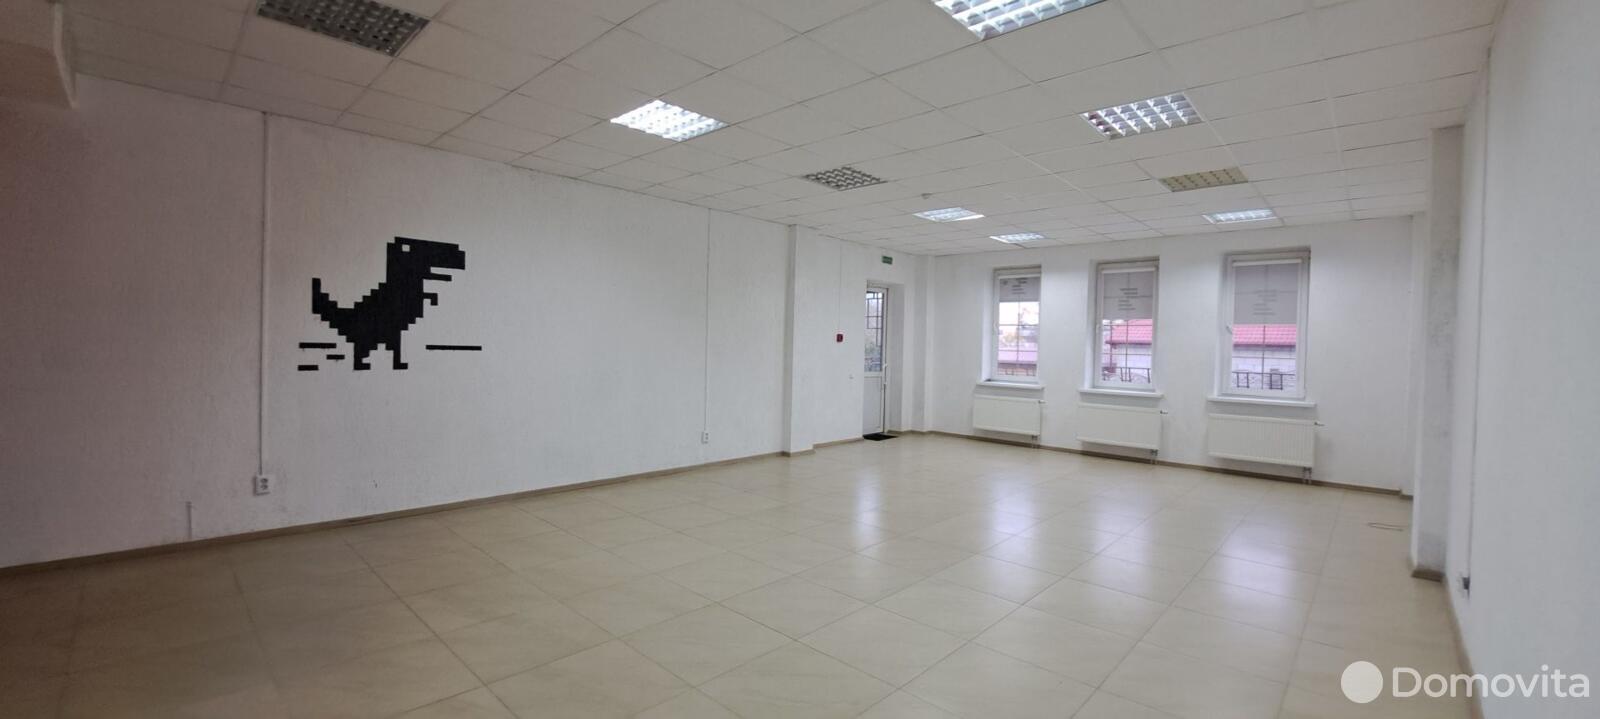 Аренда офиса на ул. Дзержинского, д. 40 в Гродно, 5068USD, код 11139 - фото 6